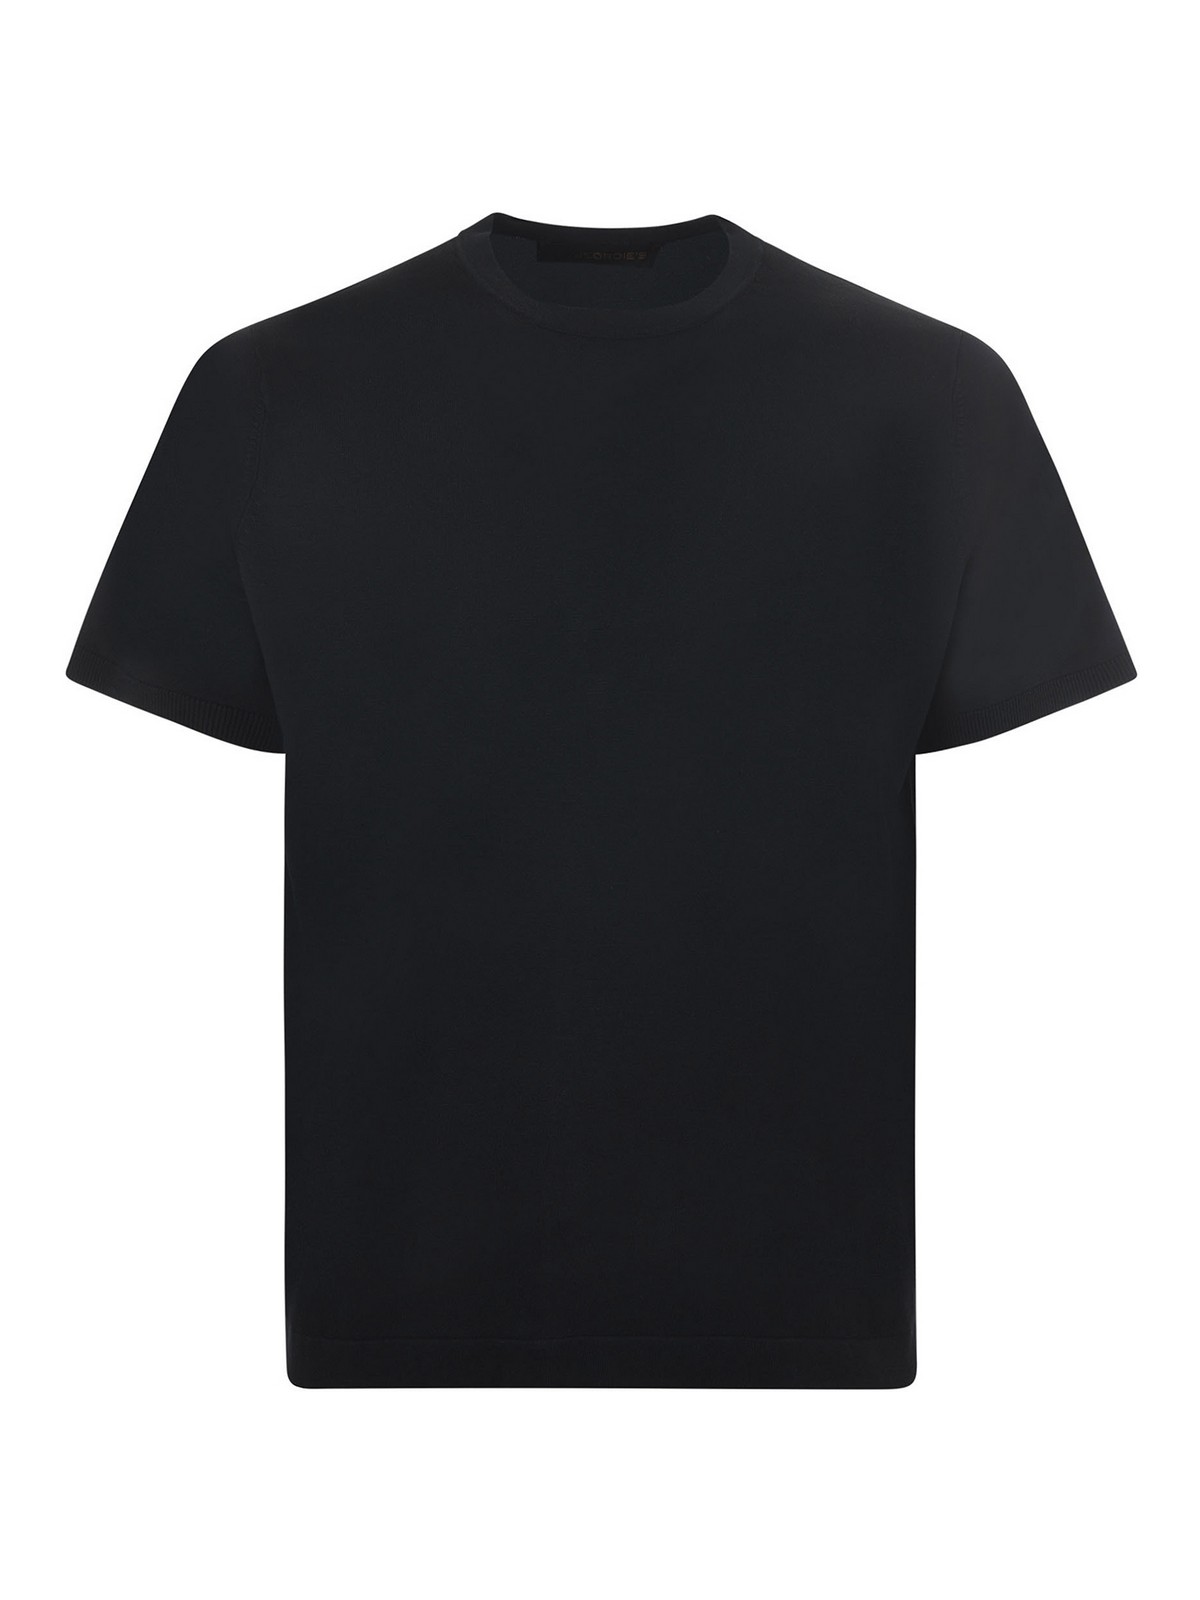 Jeordie's Jeordies T-shirt In Black